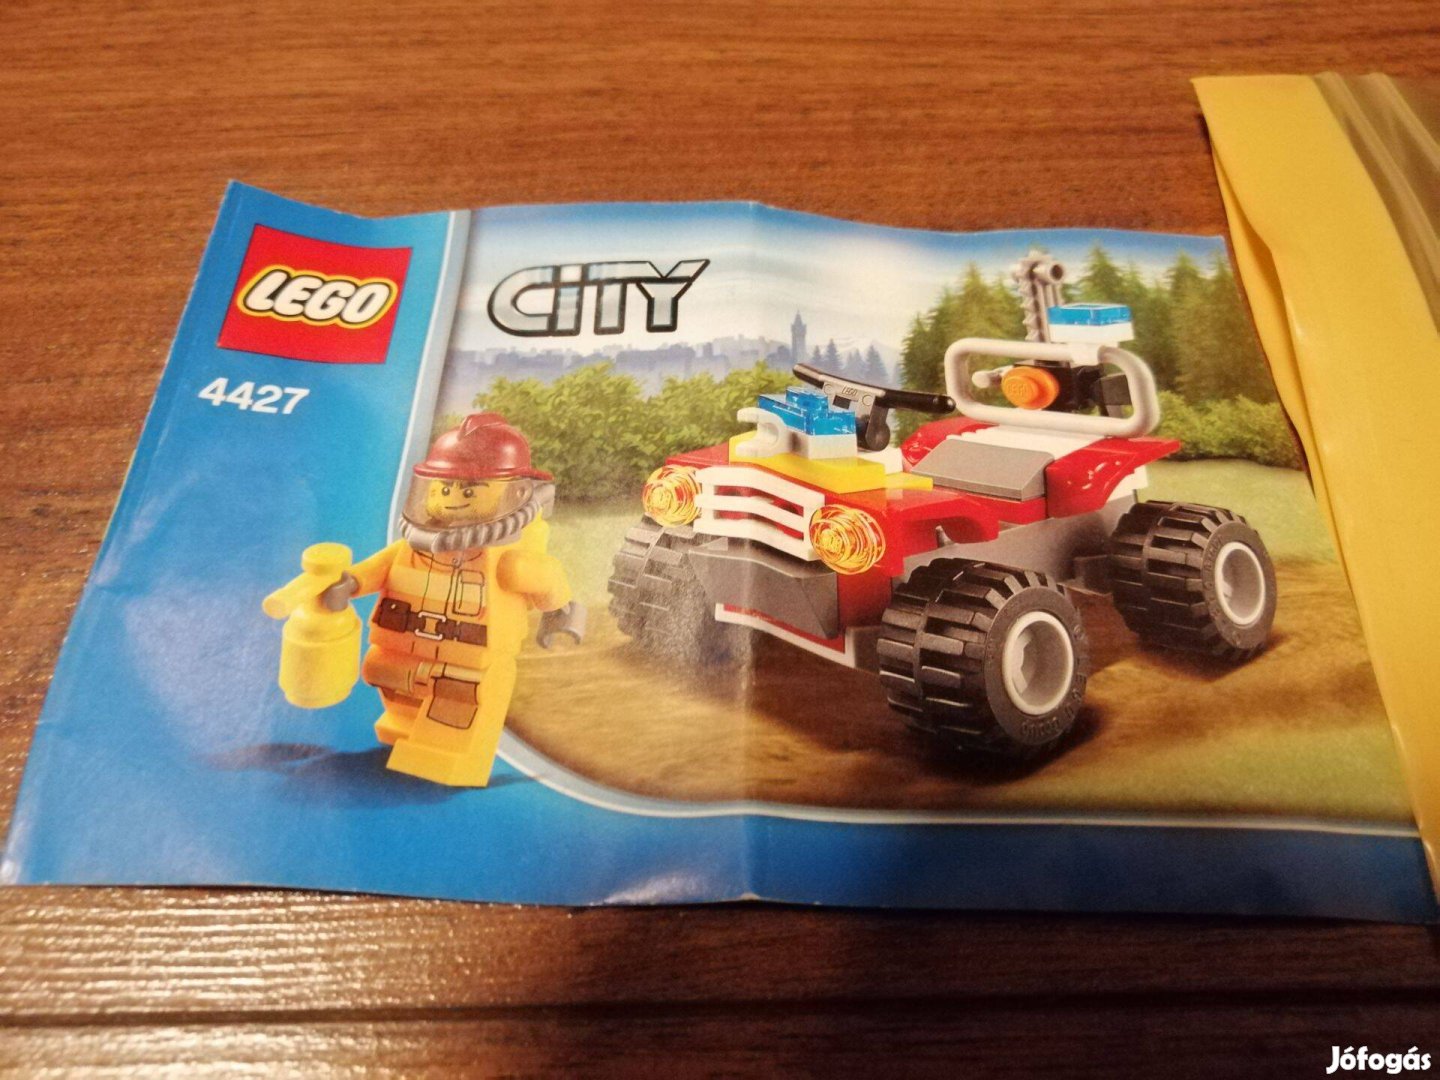 Lego City 4427 használt készlet